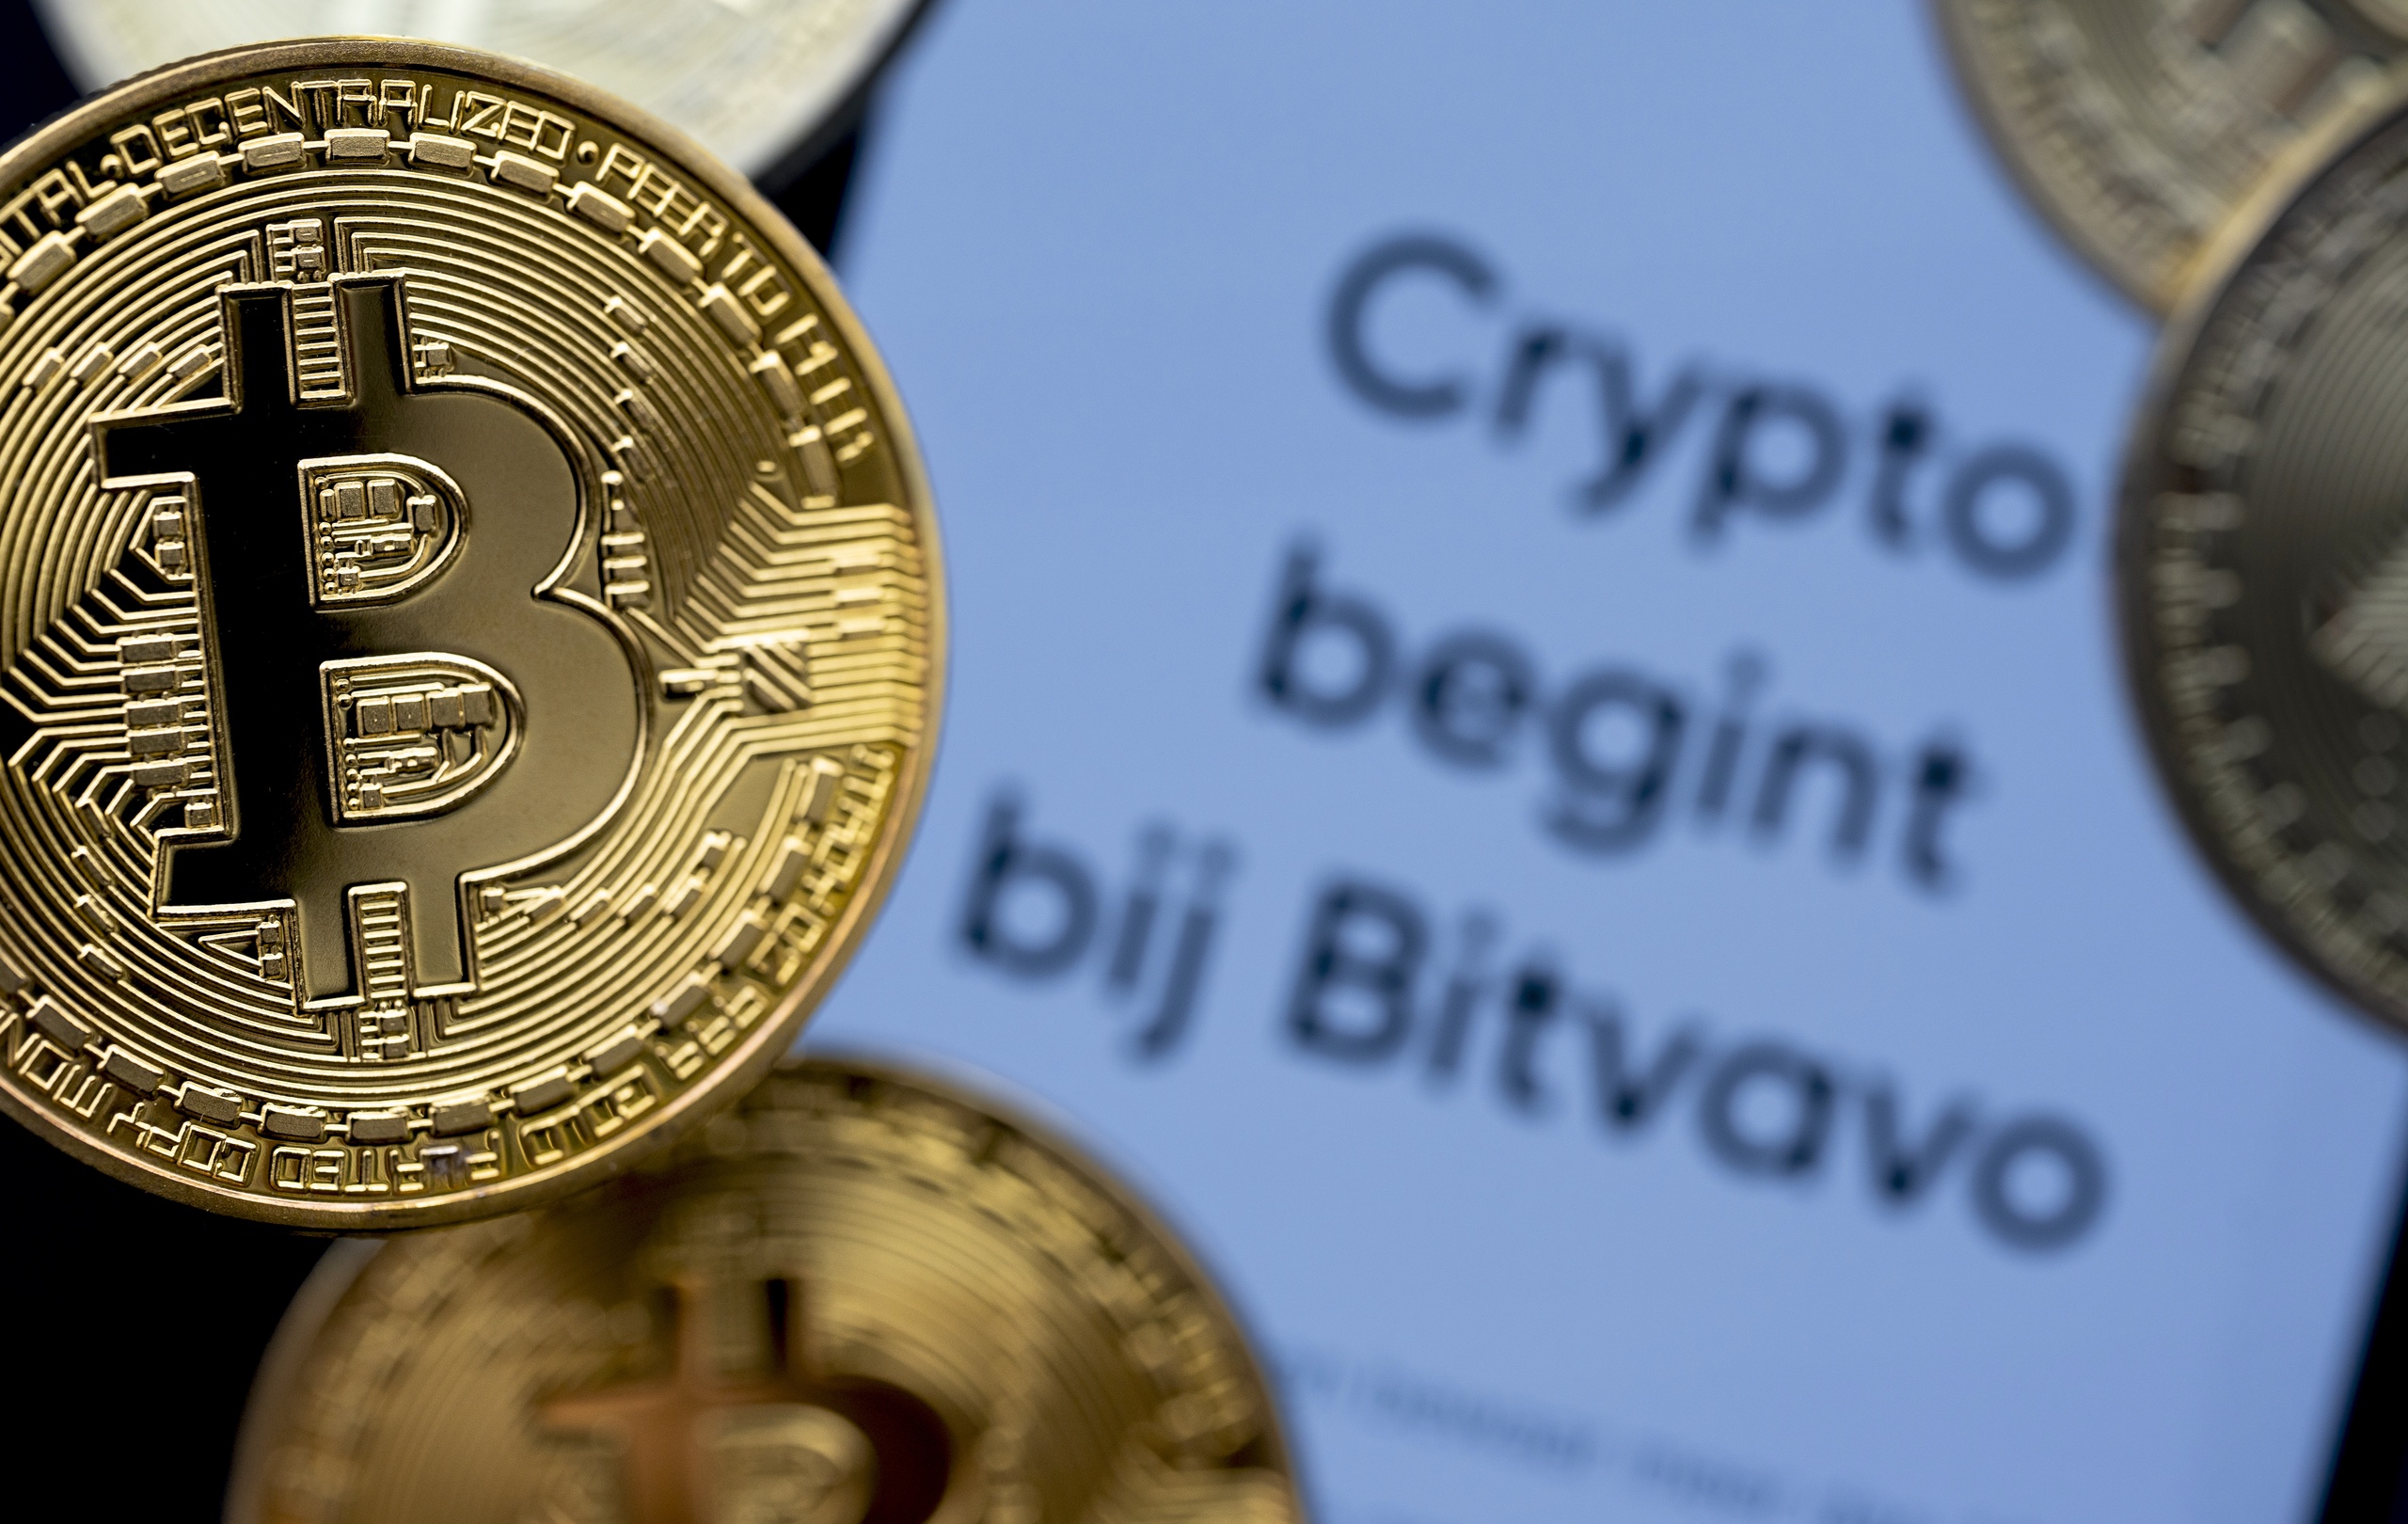 De onrust rondom Bitvavo, het grootste cryptoplatform van Nederland, neemt nog altijd toe. Dusdanig zelfs dat sommige partners van het bedrijf beleggers aanraden om hun crypto's van het platform te halen. Blockchain- en crypto-expert Jacob Boersma snapt die oproep wel.